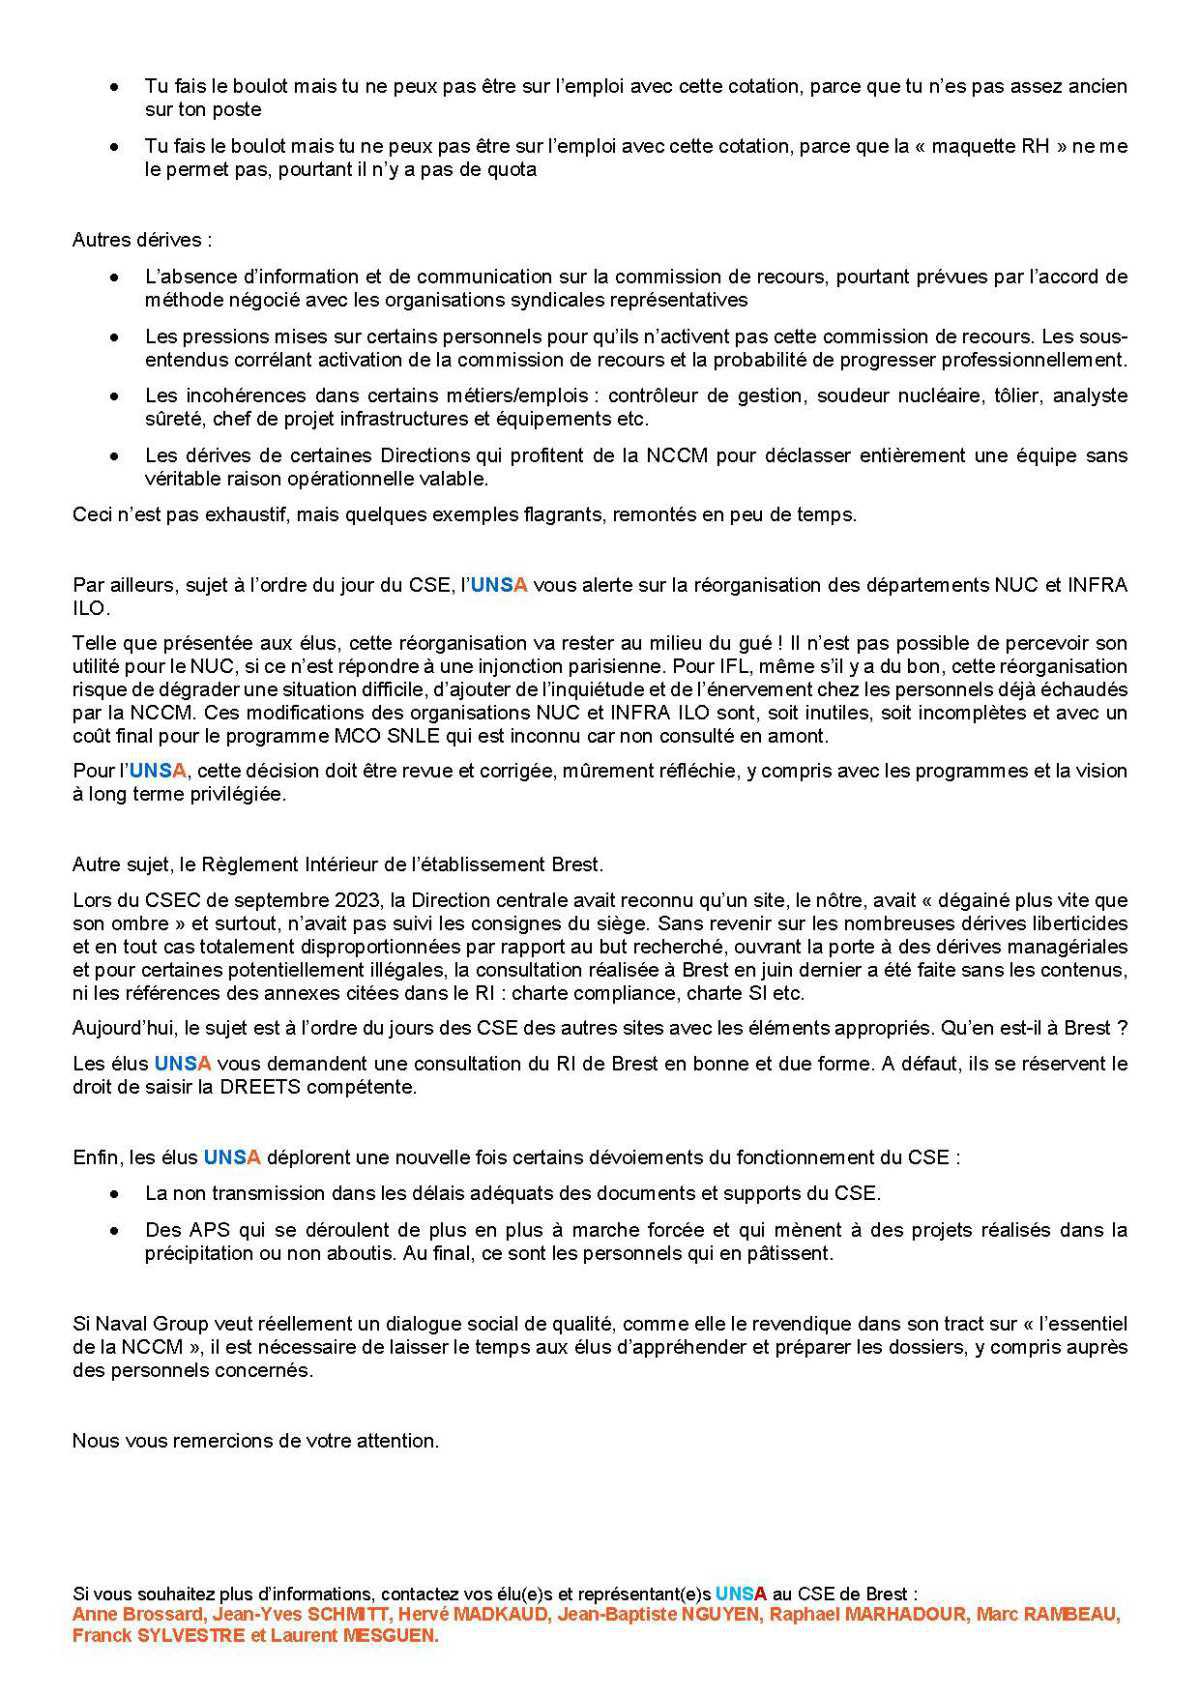 CSE de Brest - Réunion du 14 novembre 2023 - Déclaration liminaire